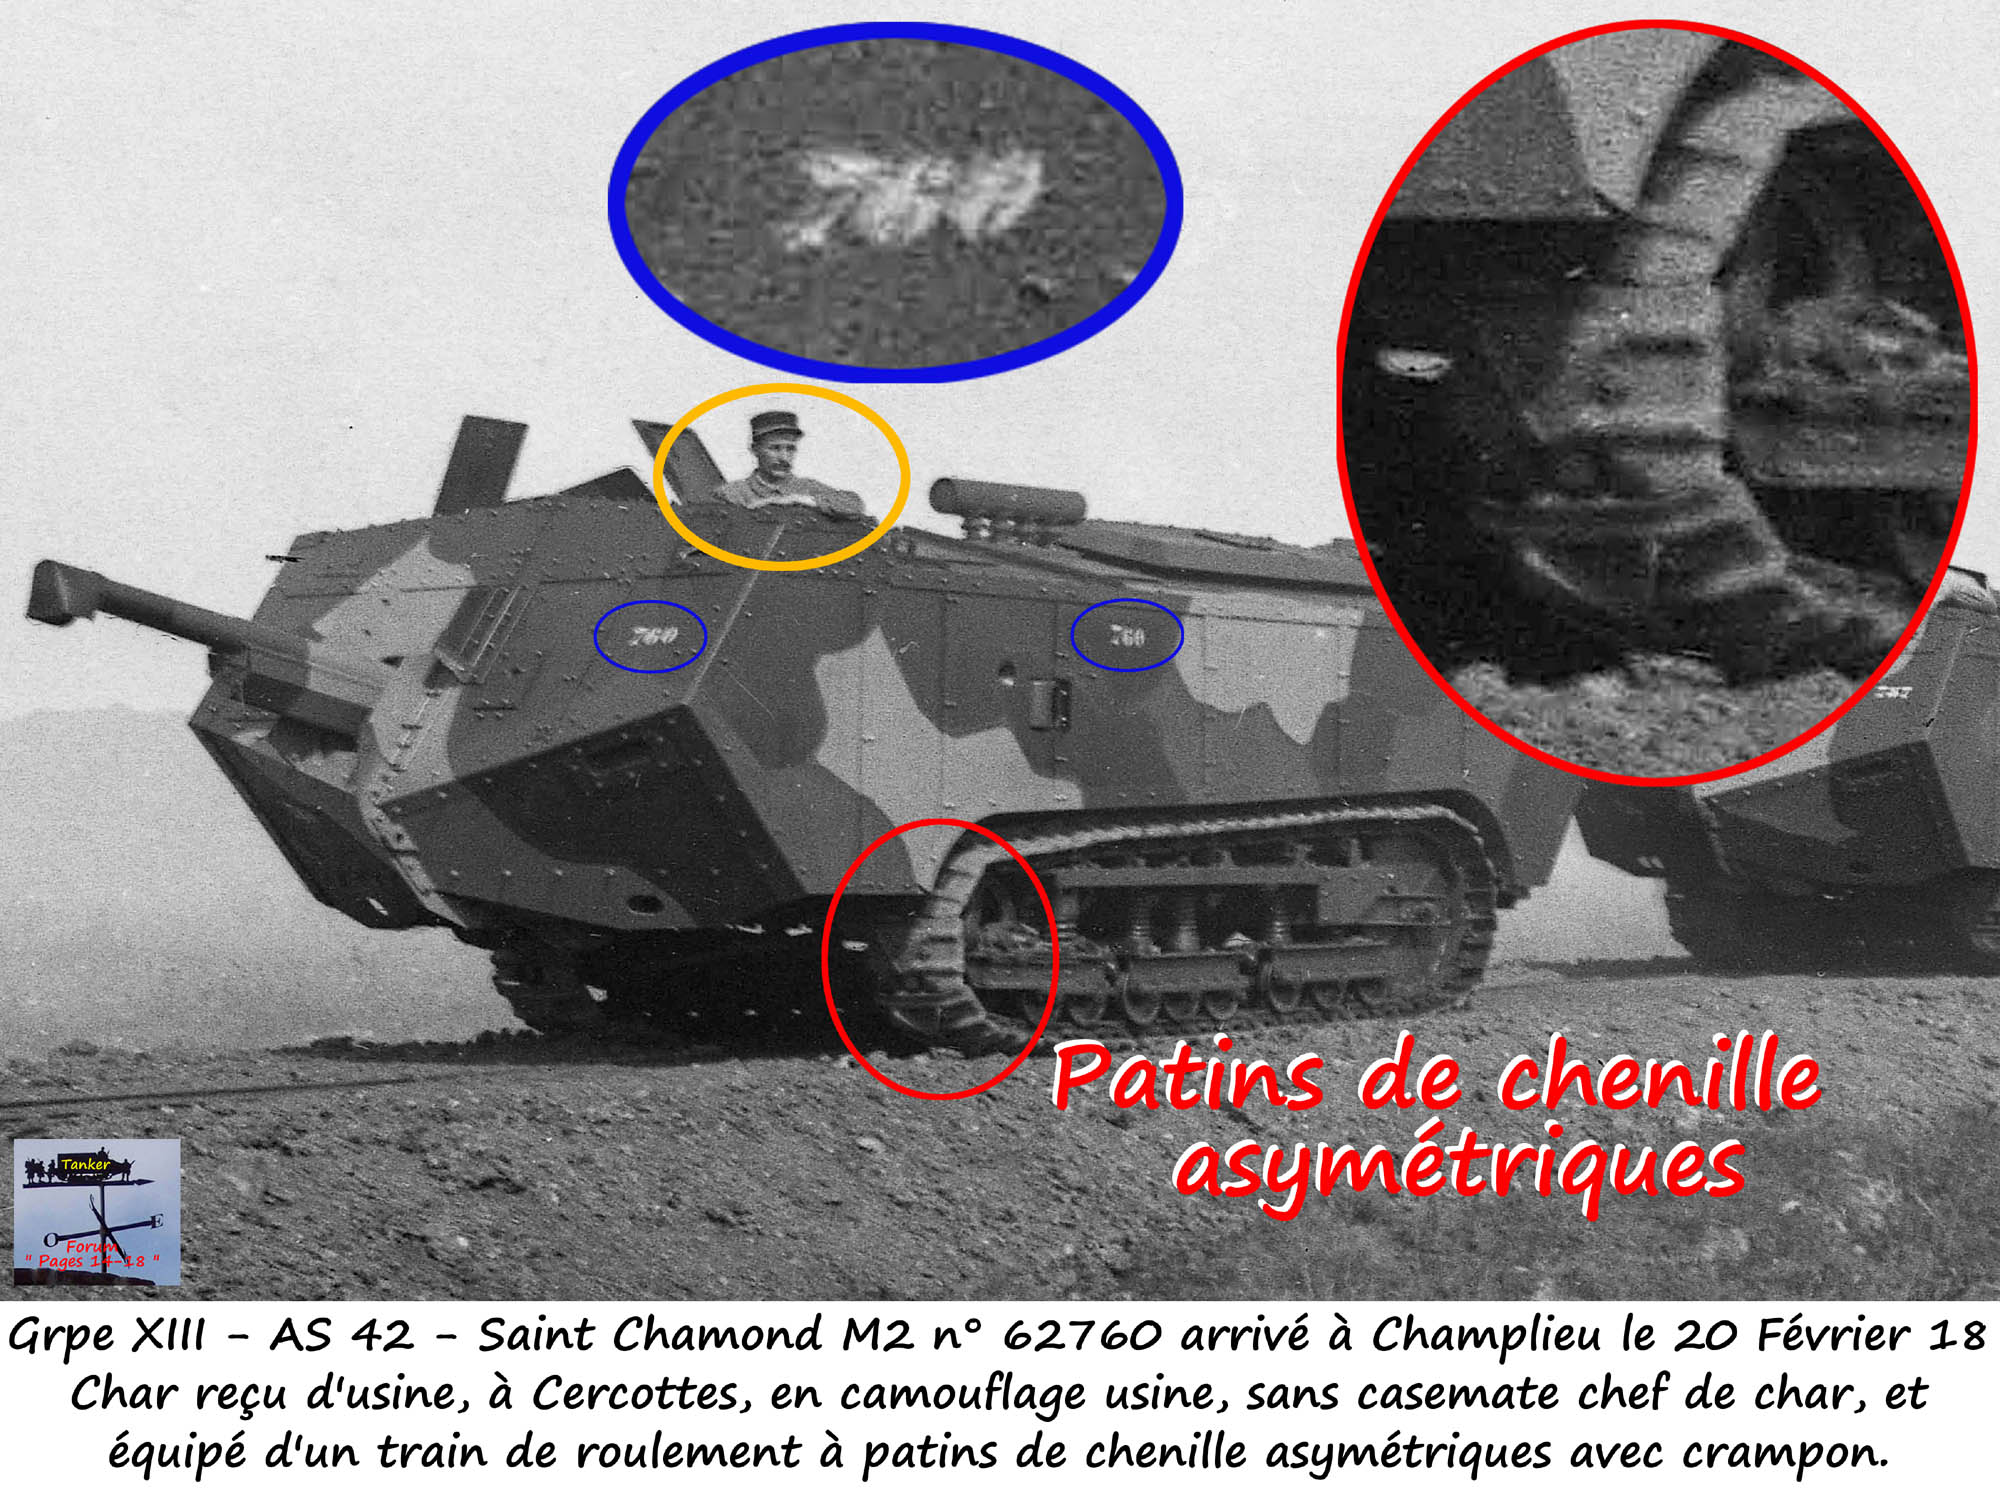 33 - Patin de chenille asymétrique du St Chamond M2 n° 62760 de l'AS 42.jpg